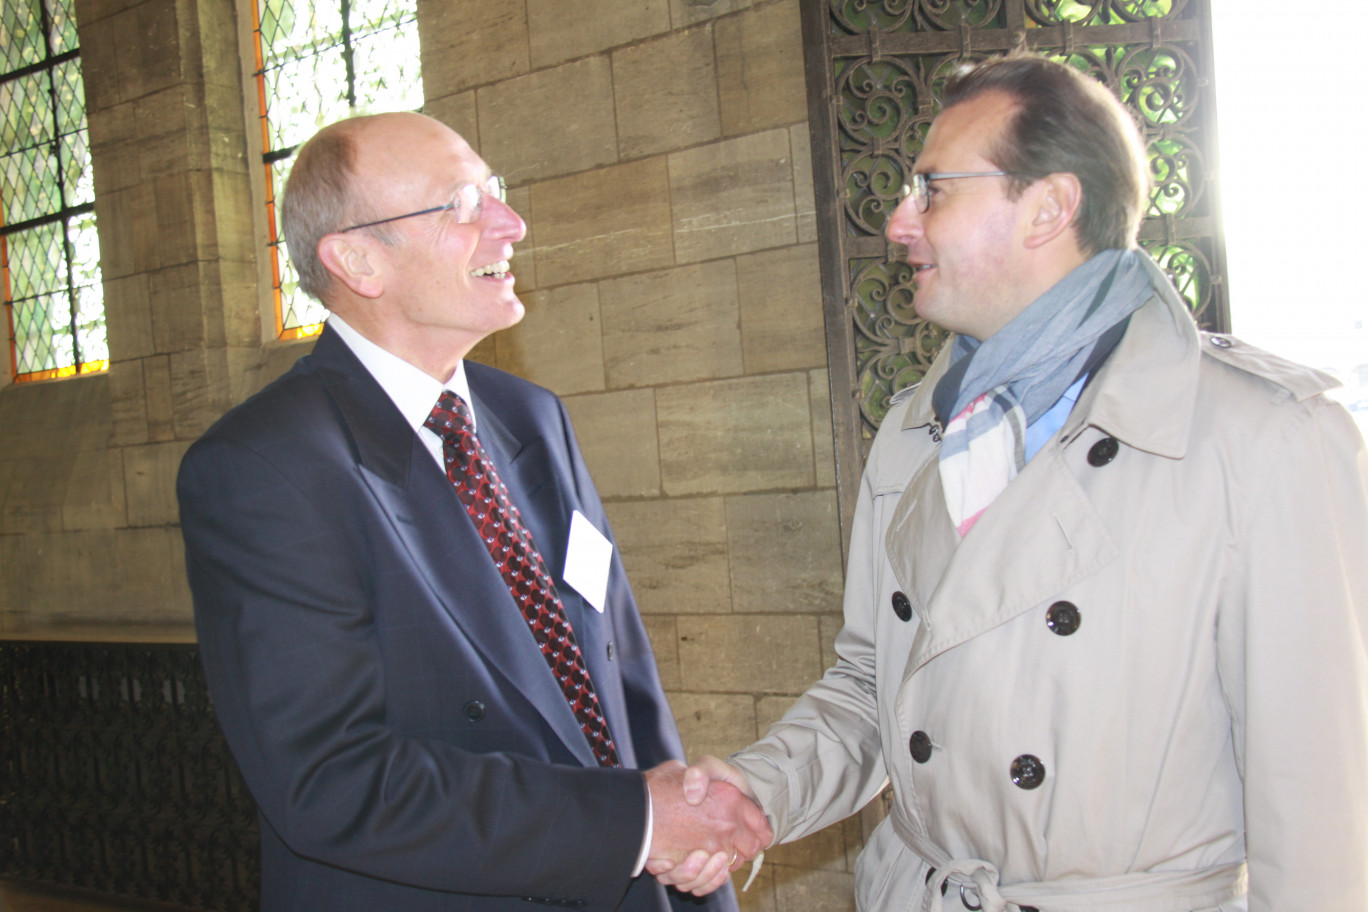 Jean-Claude Milot, président du tribunal de commerce d’Arras, accueille Frédéric Leturque, maire d’Arras.